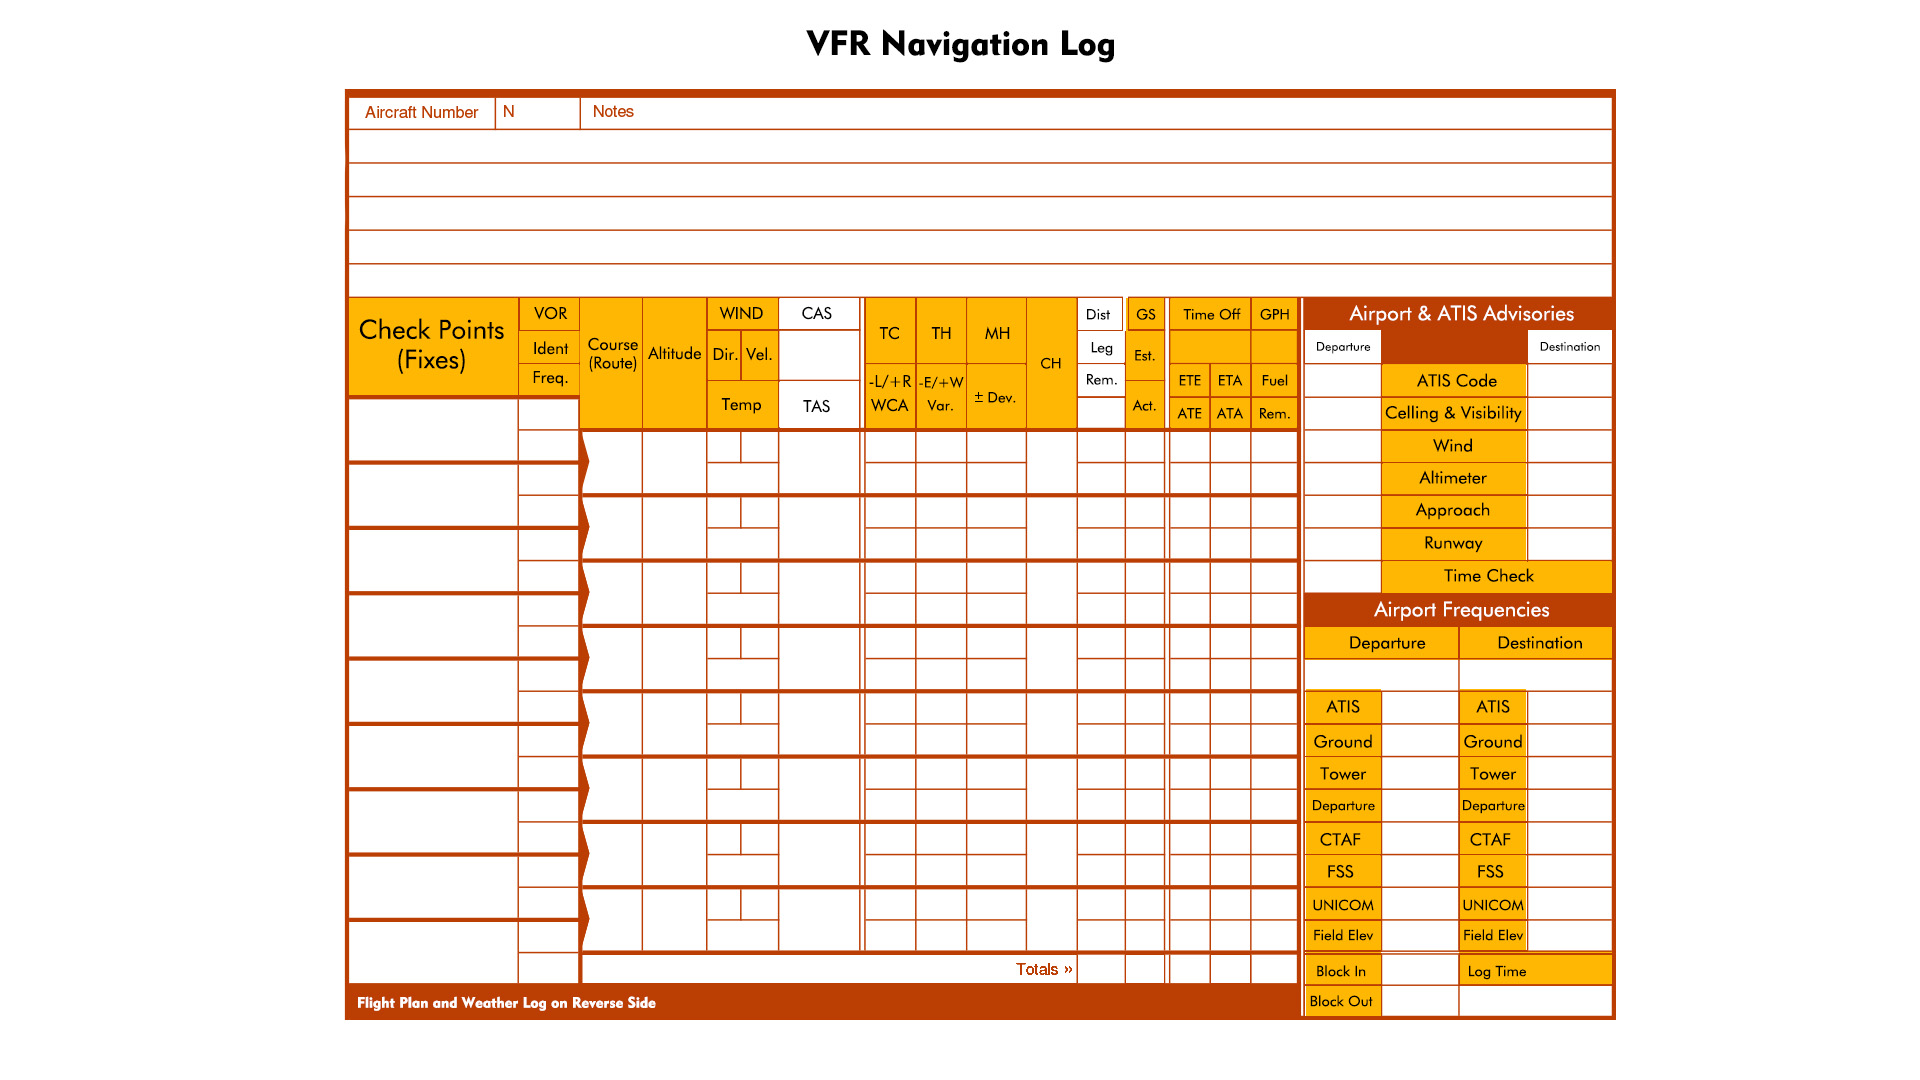 VFR Flight Plan Form Navigation Log Image